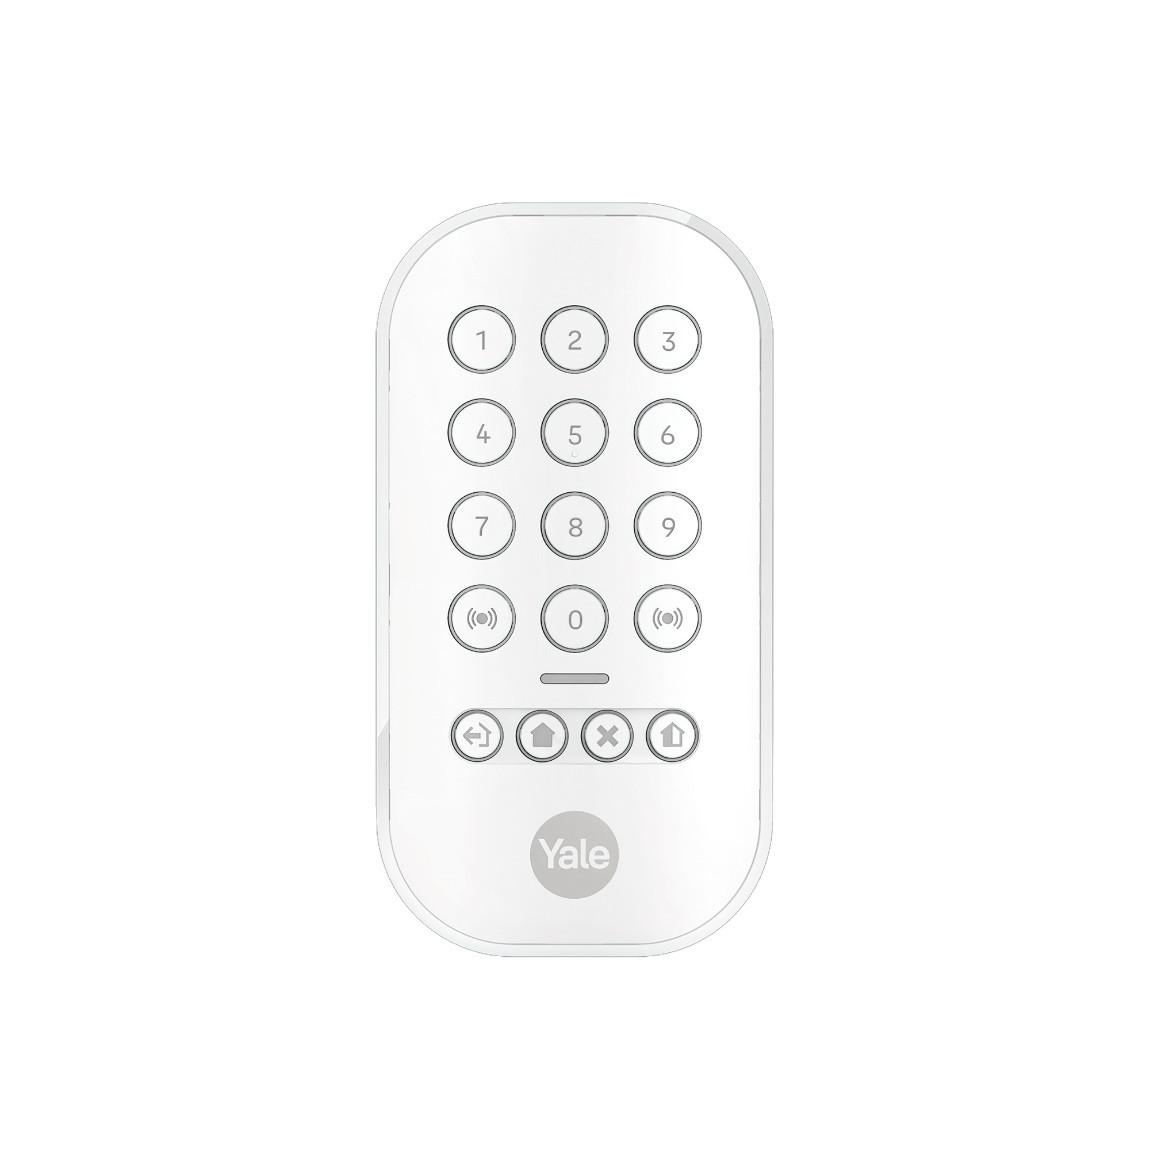 Yale Smart Alarm Keypad - Smartes Tastenfeld